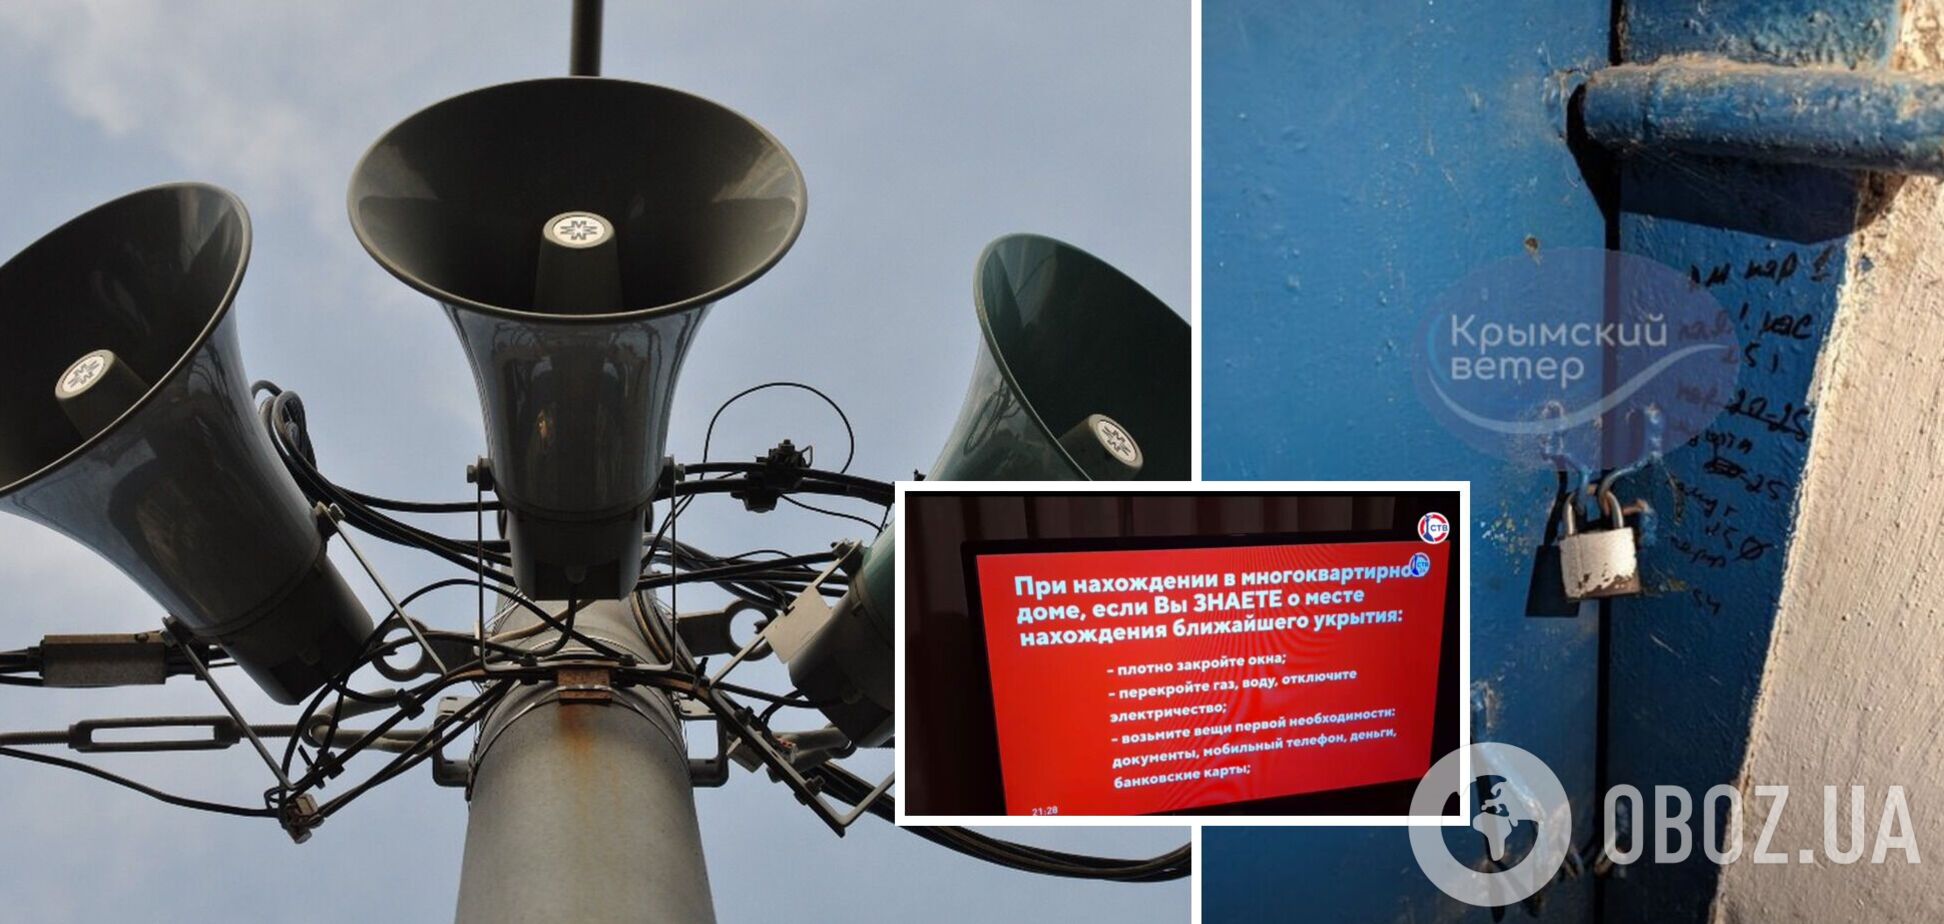 В Крыму воздушная тревога: люди пришли в укрытие, а они закрыты. Фото и видео